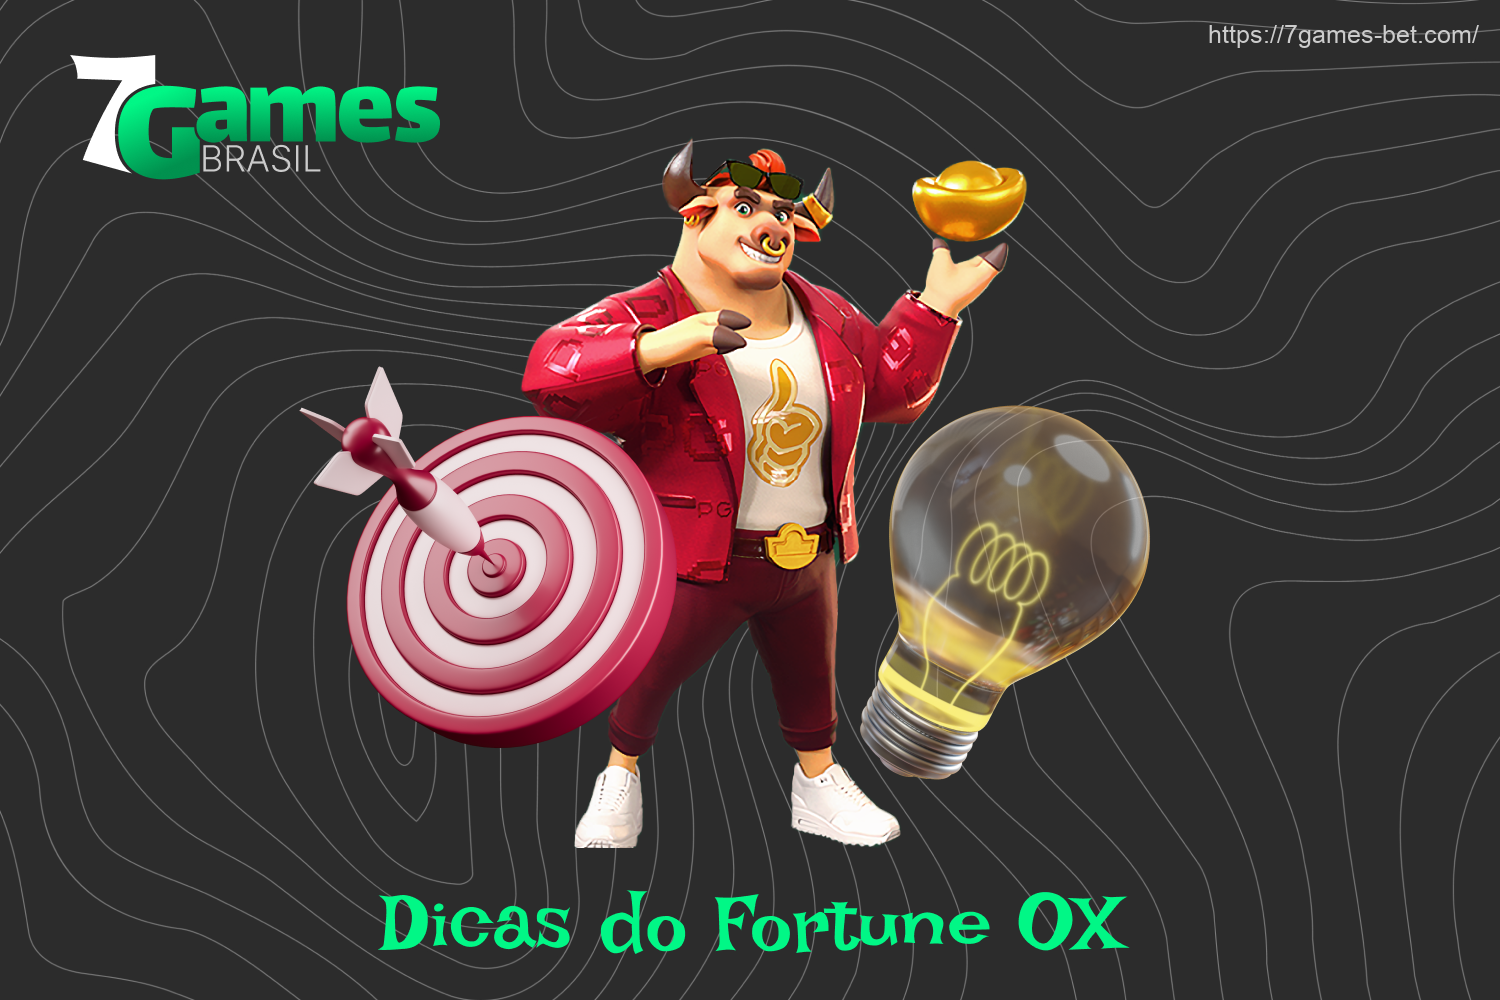 Ganhar no 7Games Fortune OX é uma questão de sorte, mas os jogadores do Brasil podem desenvolver sua própria estratégia ou seguir dicas úteis